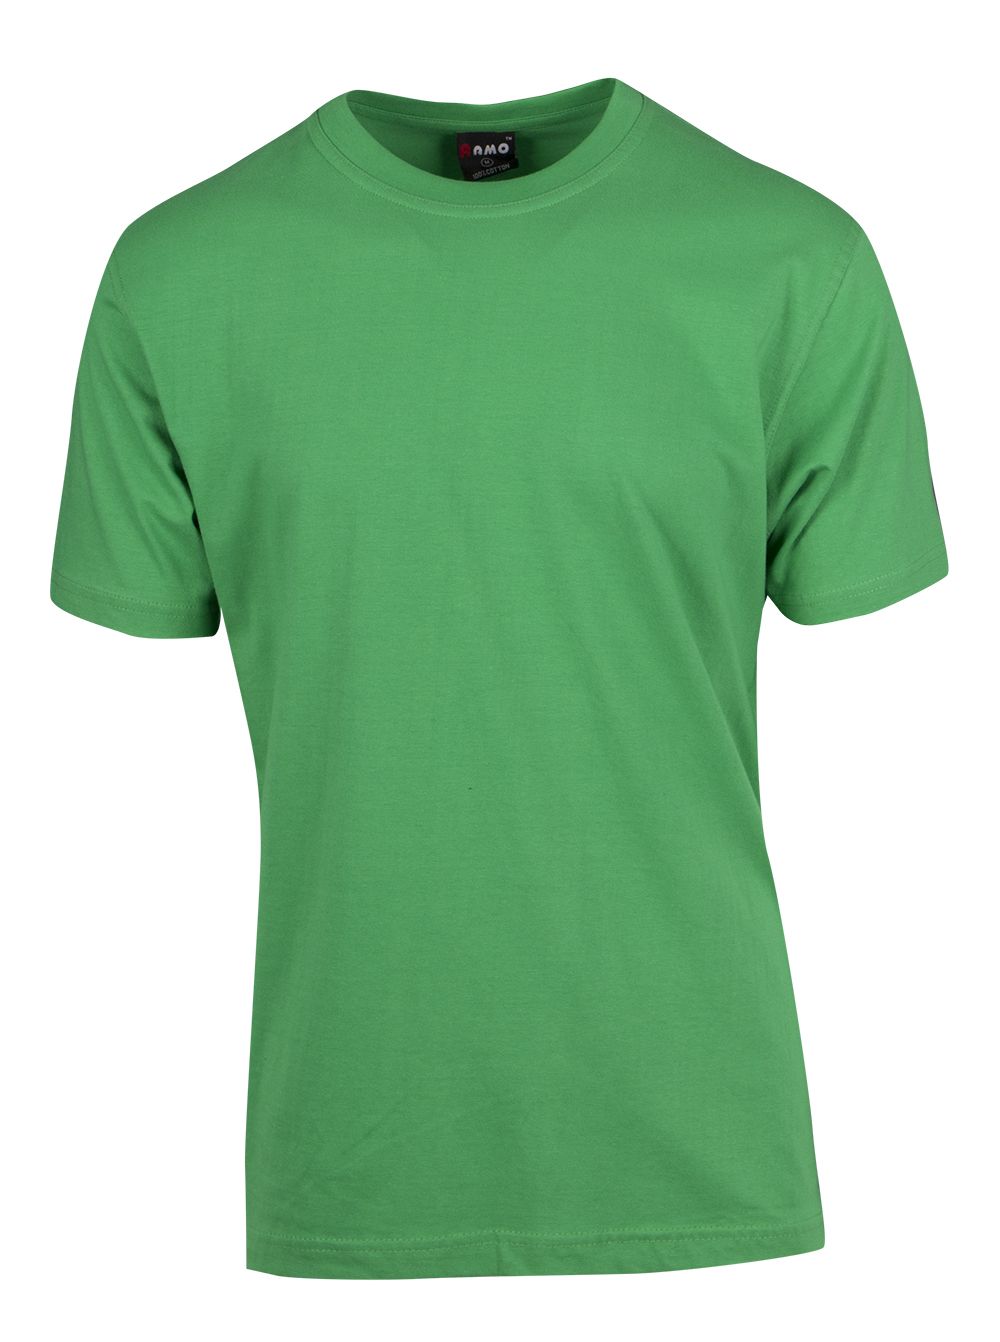 Unisex Modern Fit T-shirt